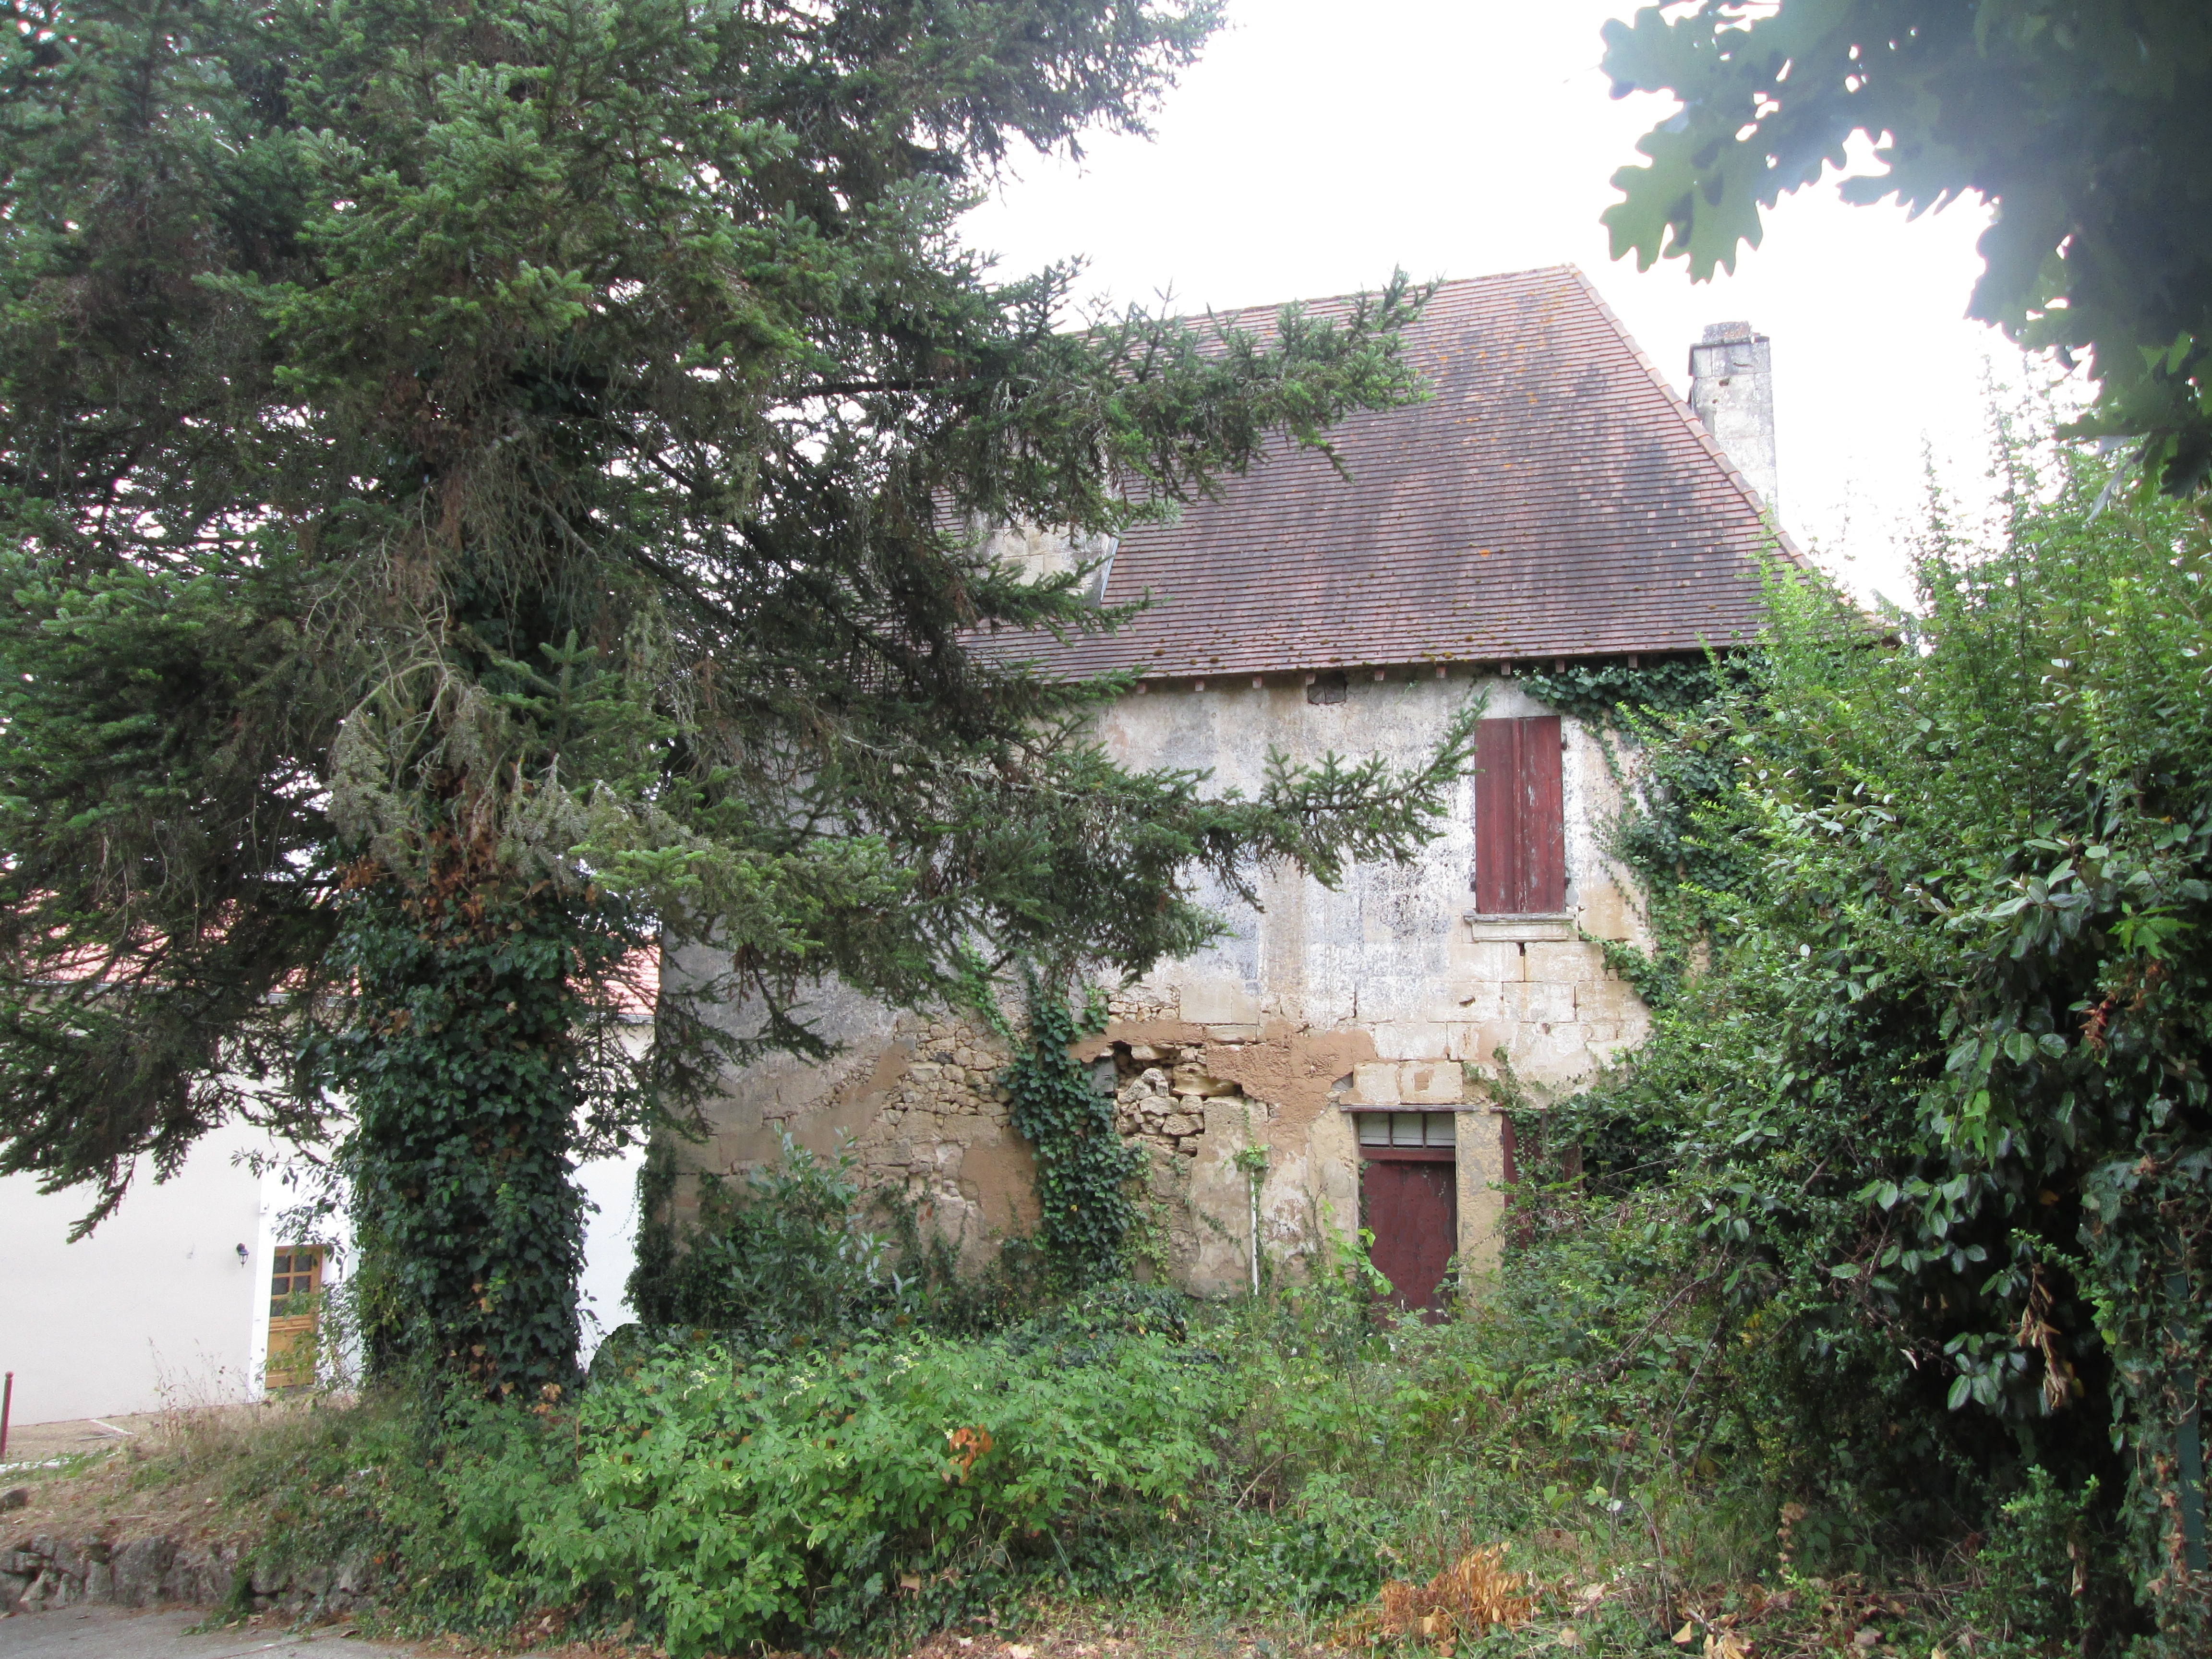 achat vente Maison Médiévale et Renaissance a vendre  à restaurer , petite dépendance Bergerac , à 15 mn, dans un village DORDOGNE AQUITAINE